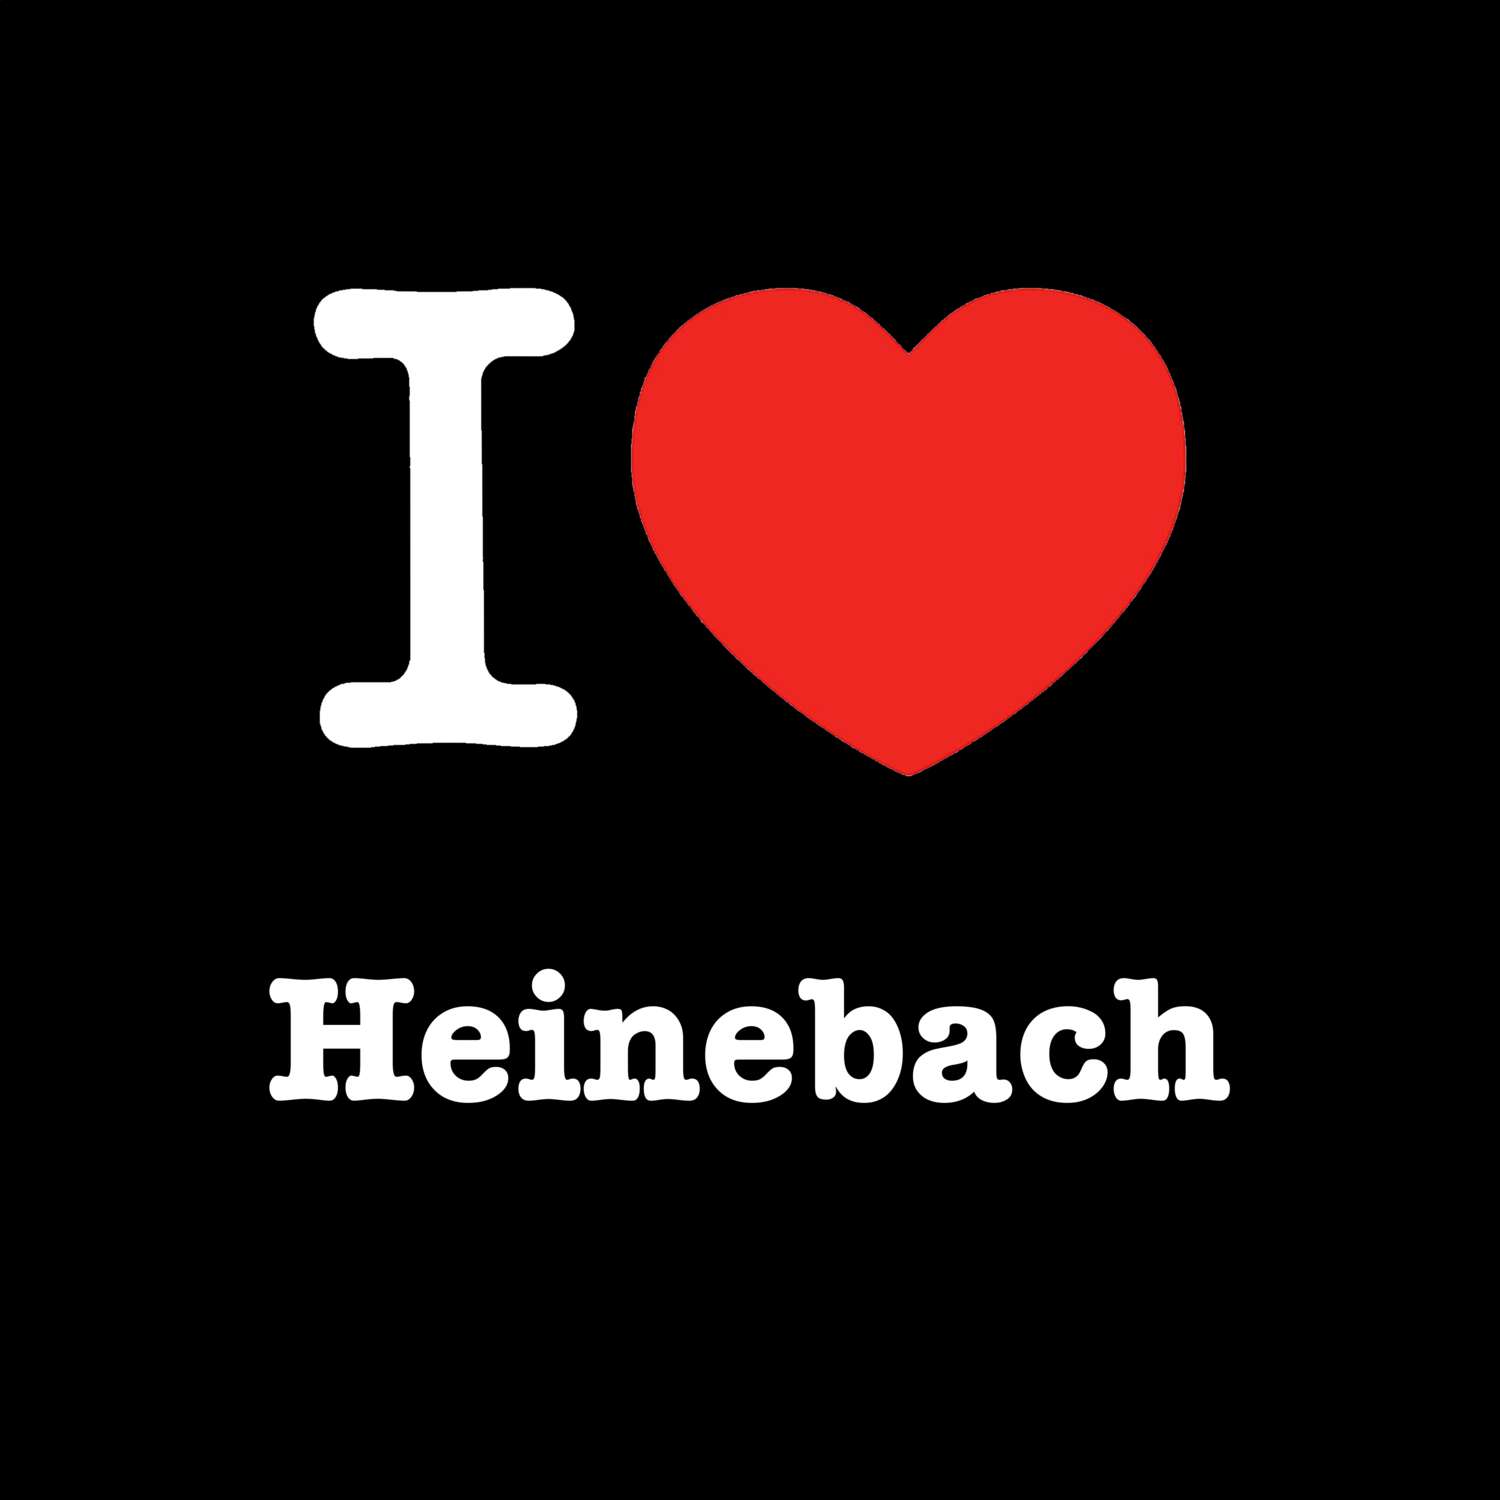 Heinebach T-Shirt »I love«